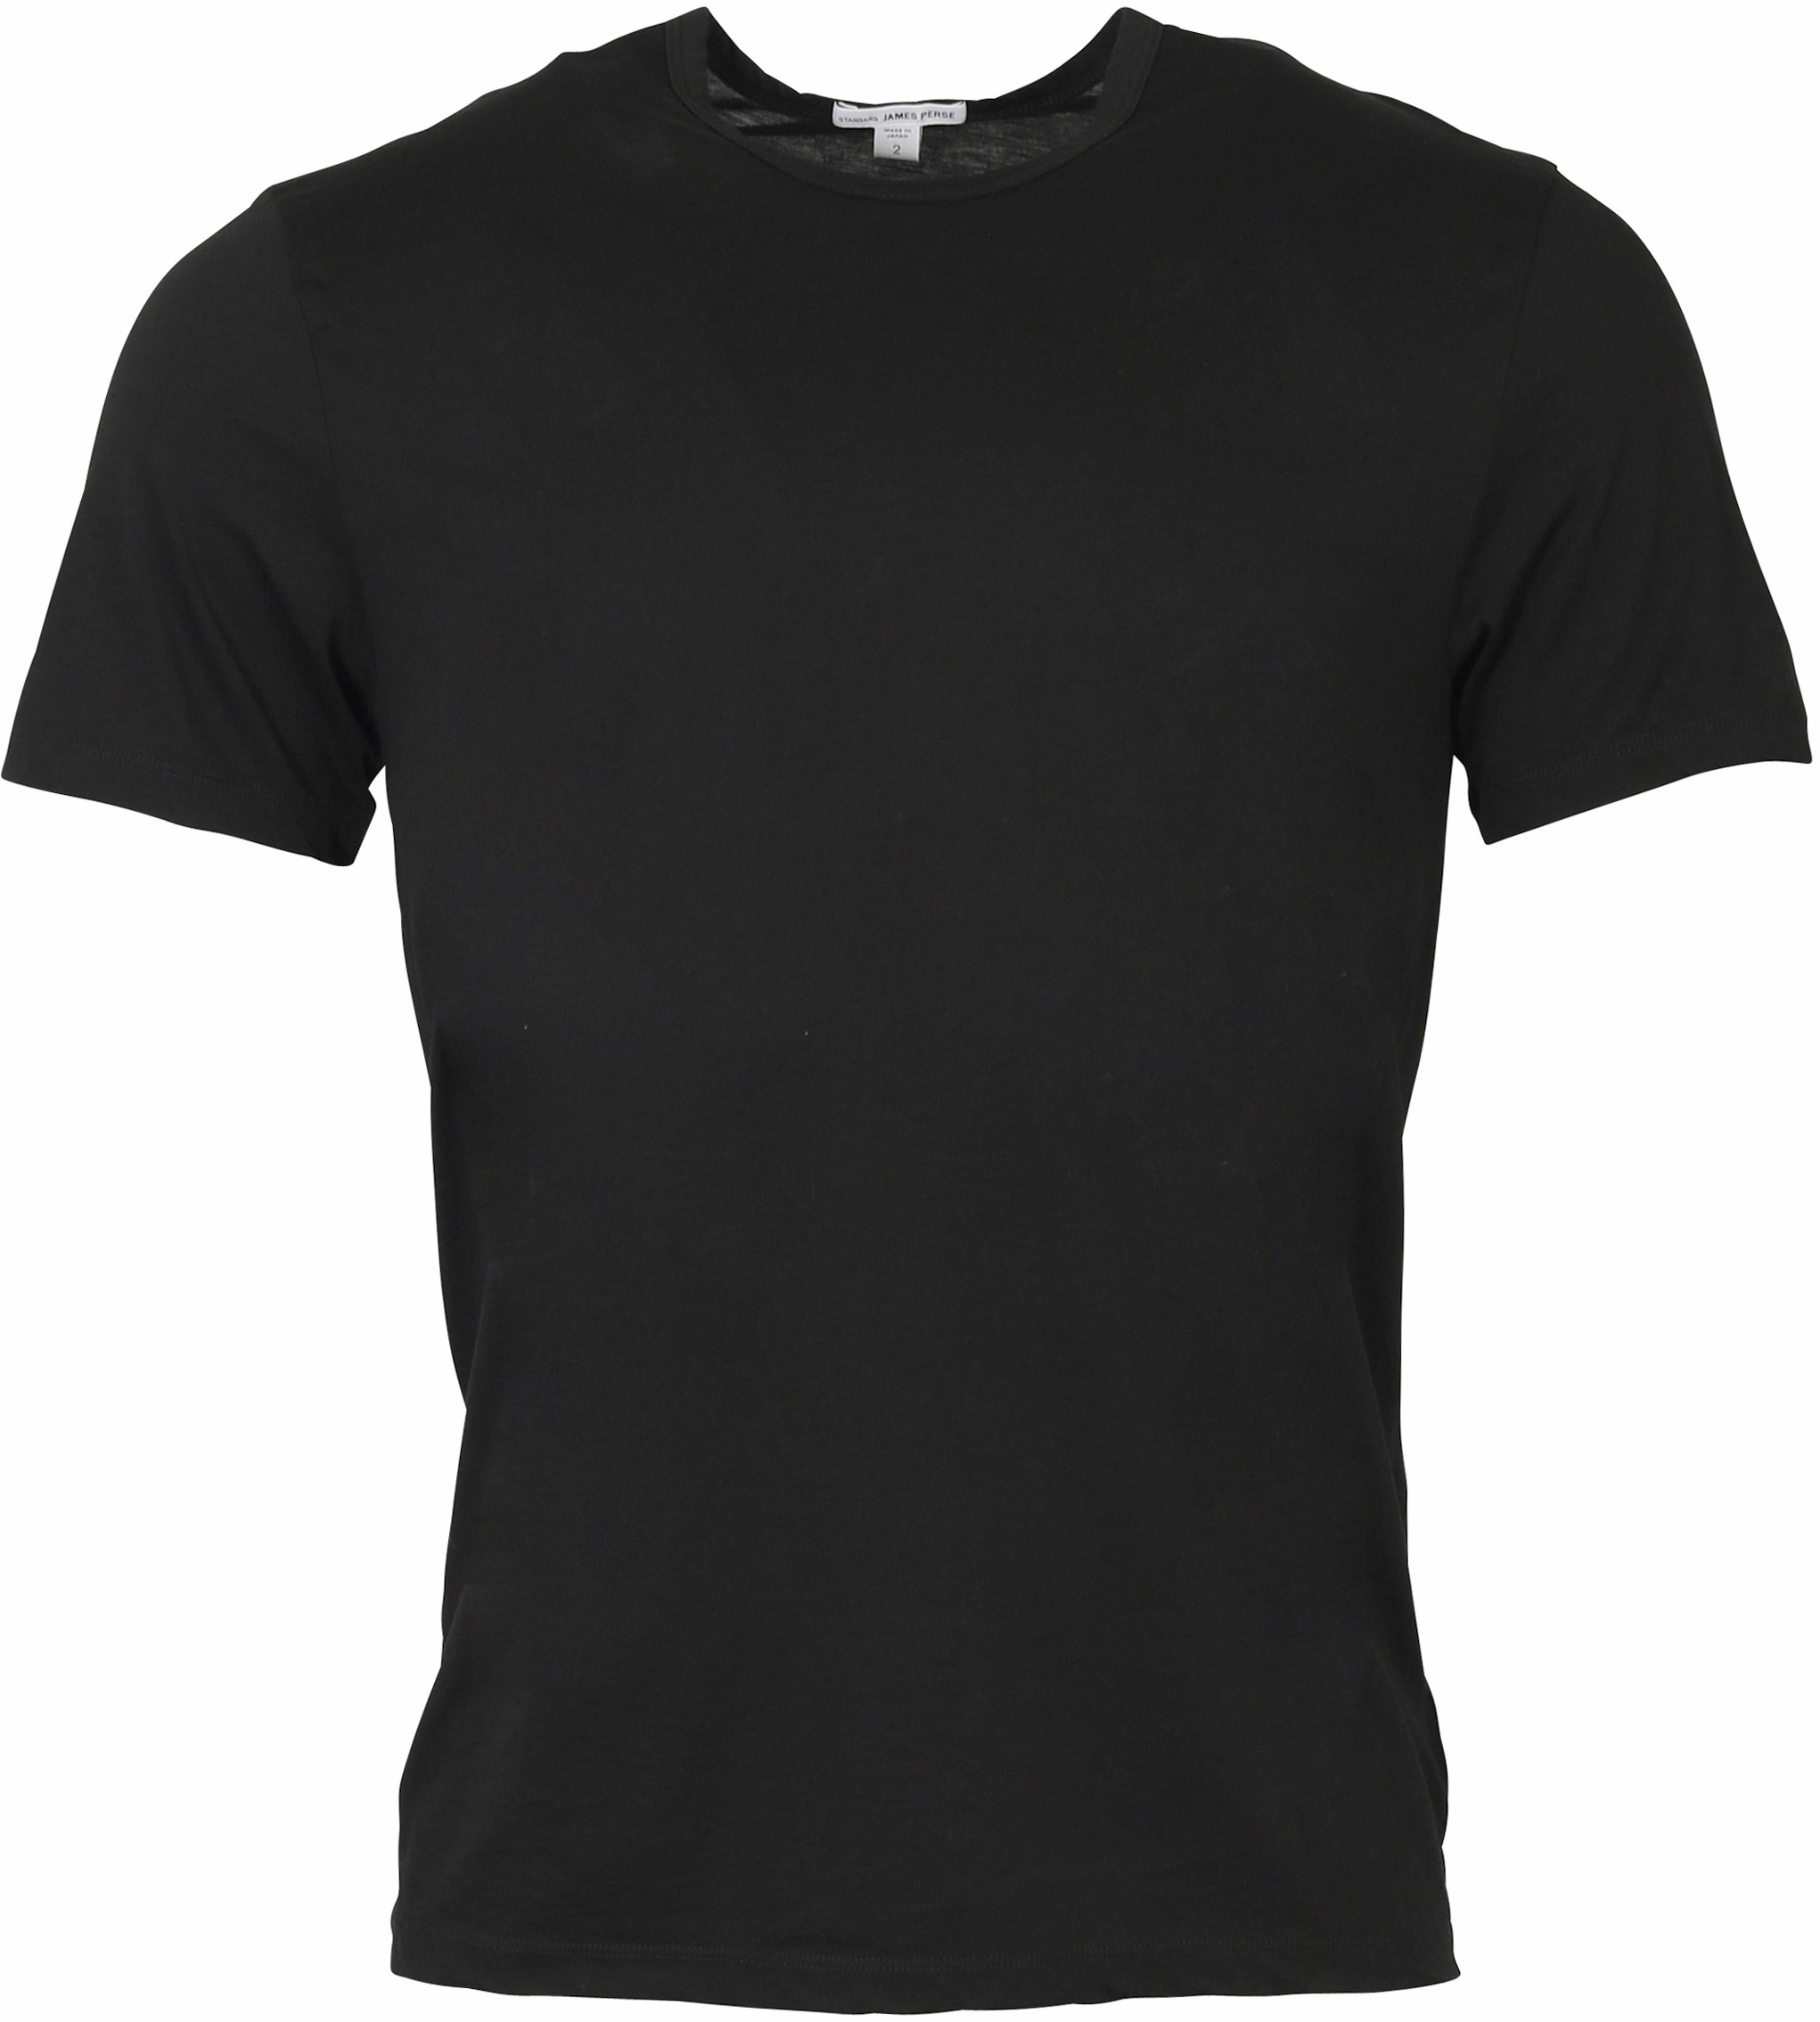 James Perse Cotton Cashmere T-Shirt Black S